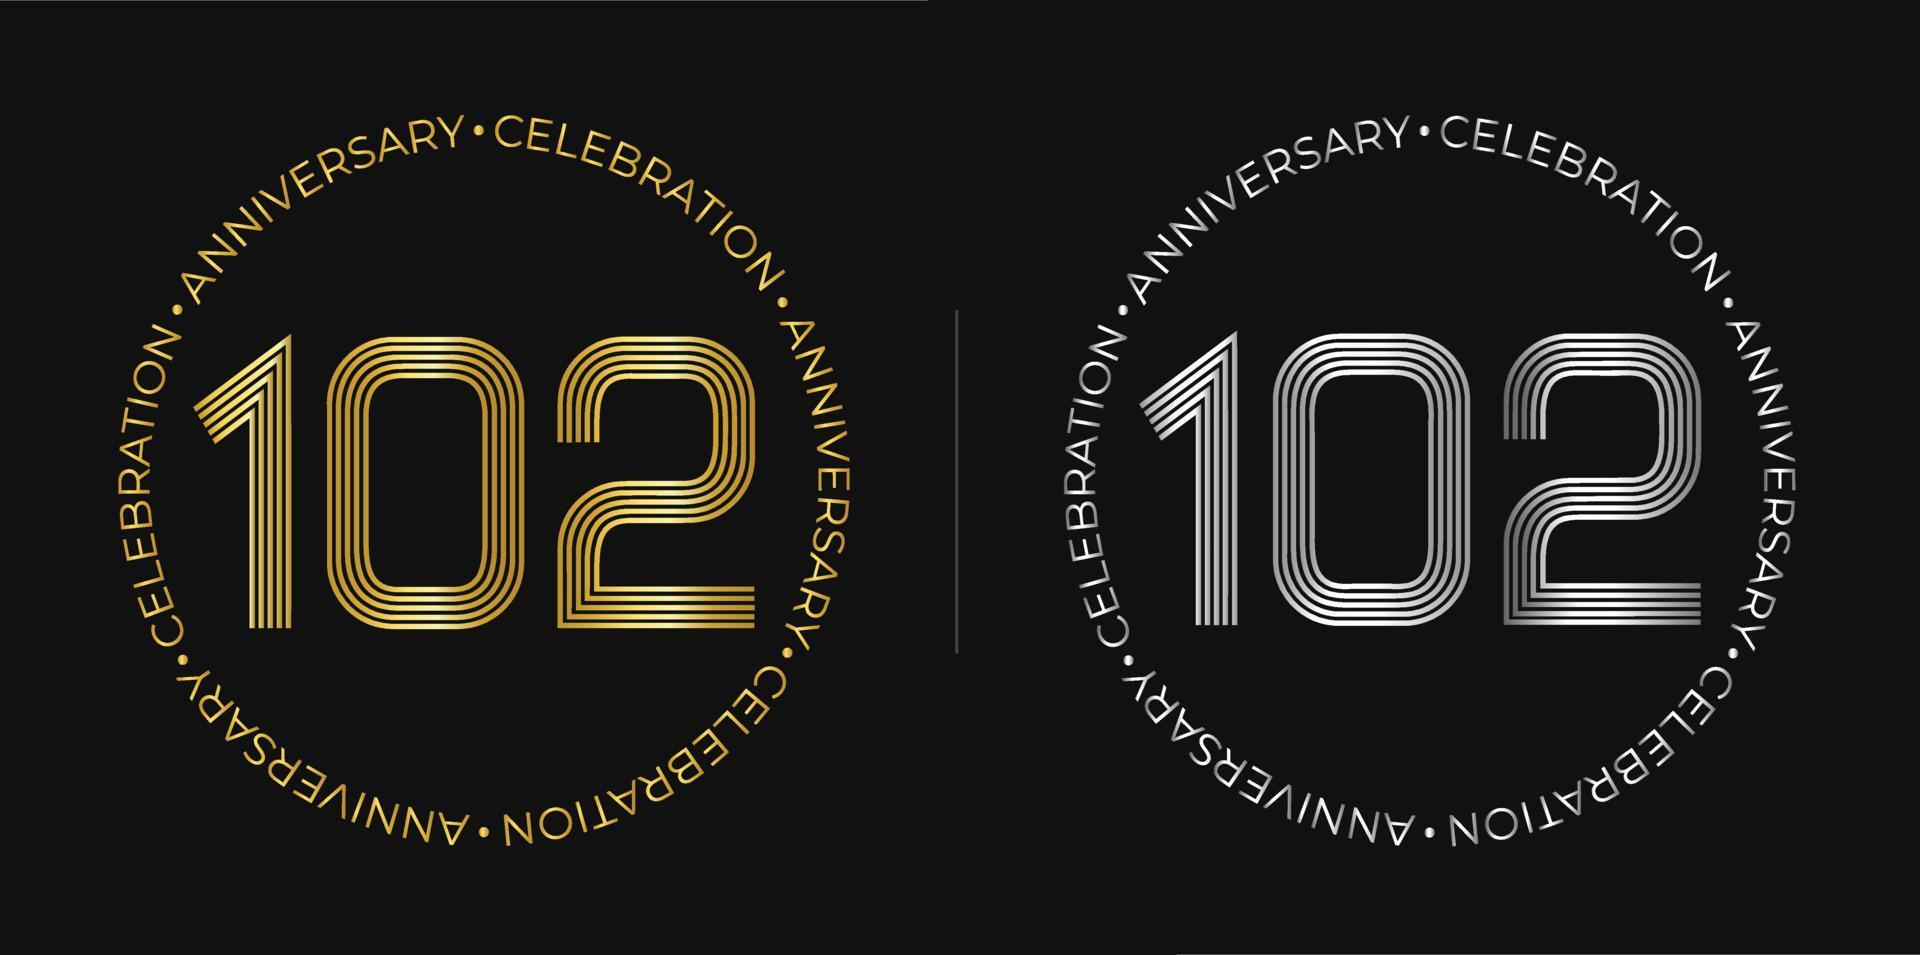 102º aniversário. banner de celebração de aniversário de cento e dois anos em cores douradas e prateadas. logotipo circular com design de números originais em linhas elegantes. vetor